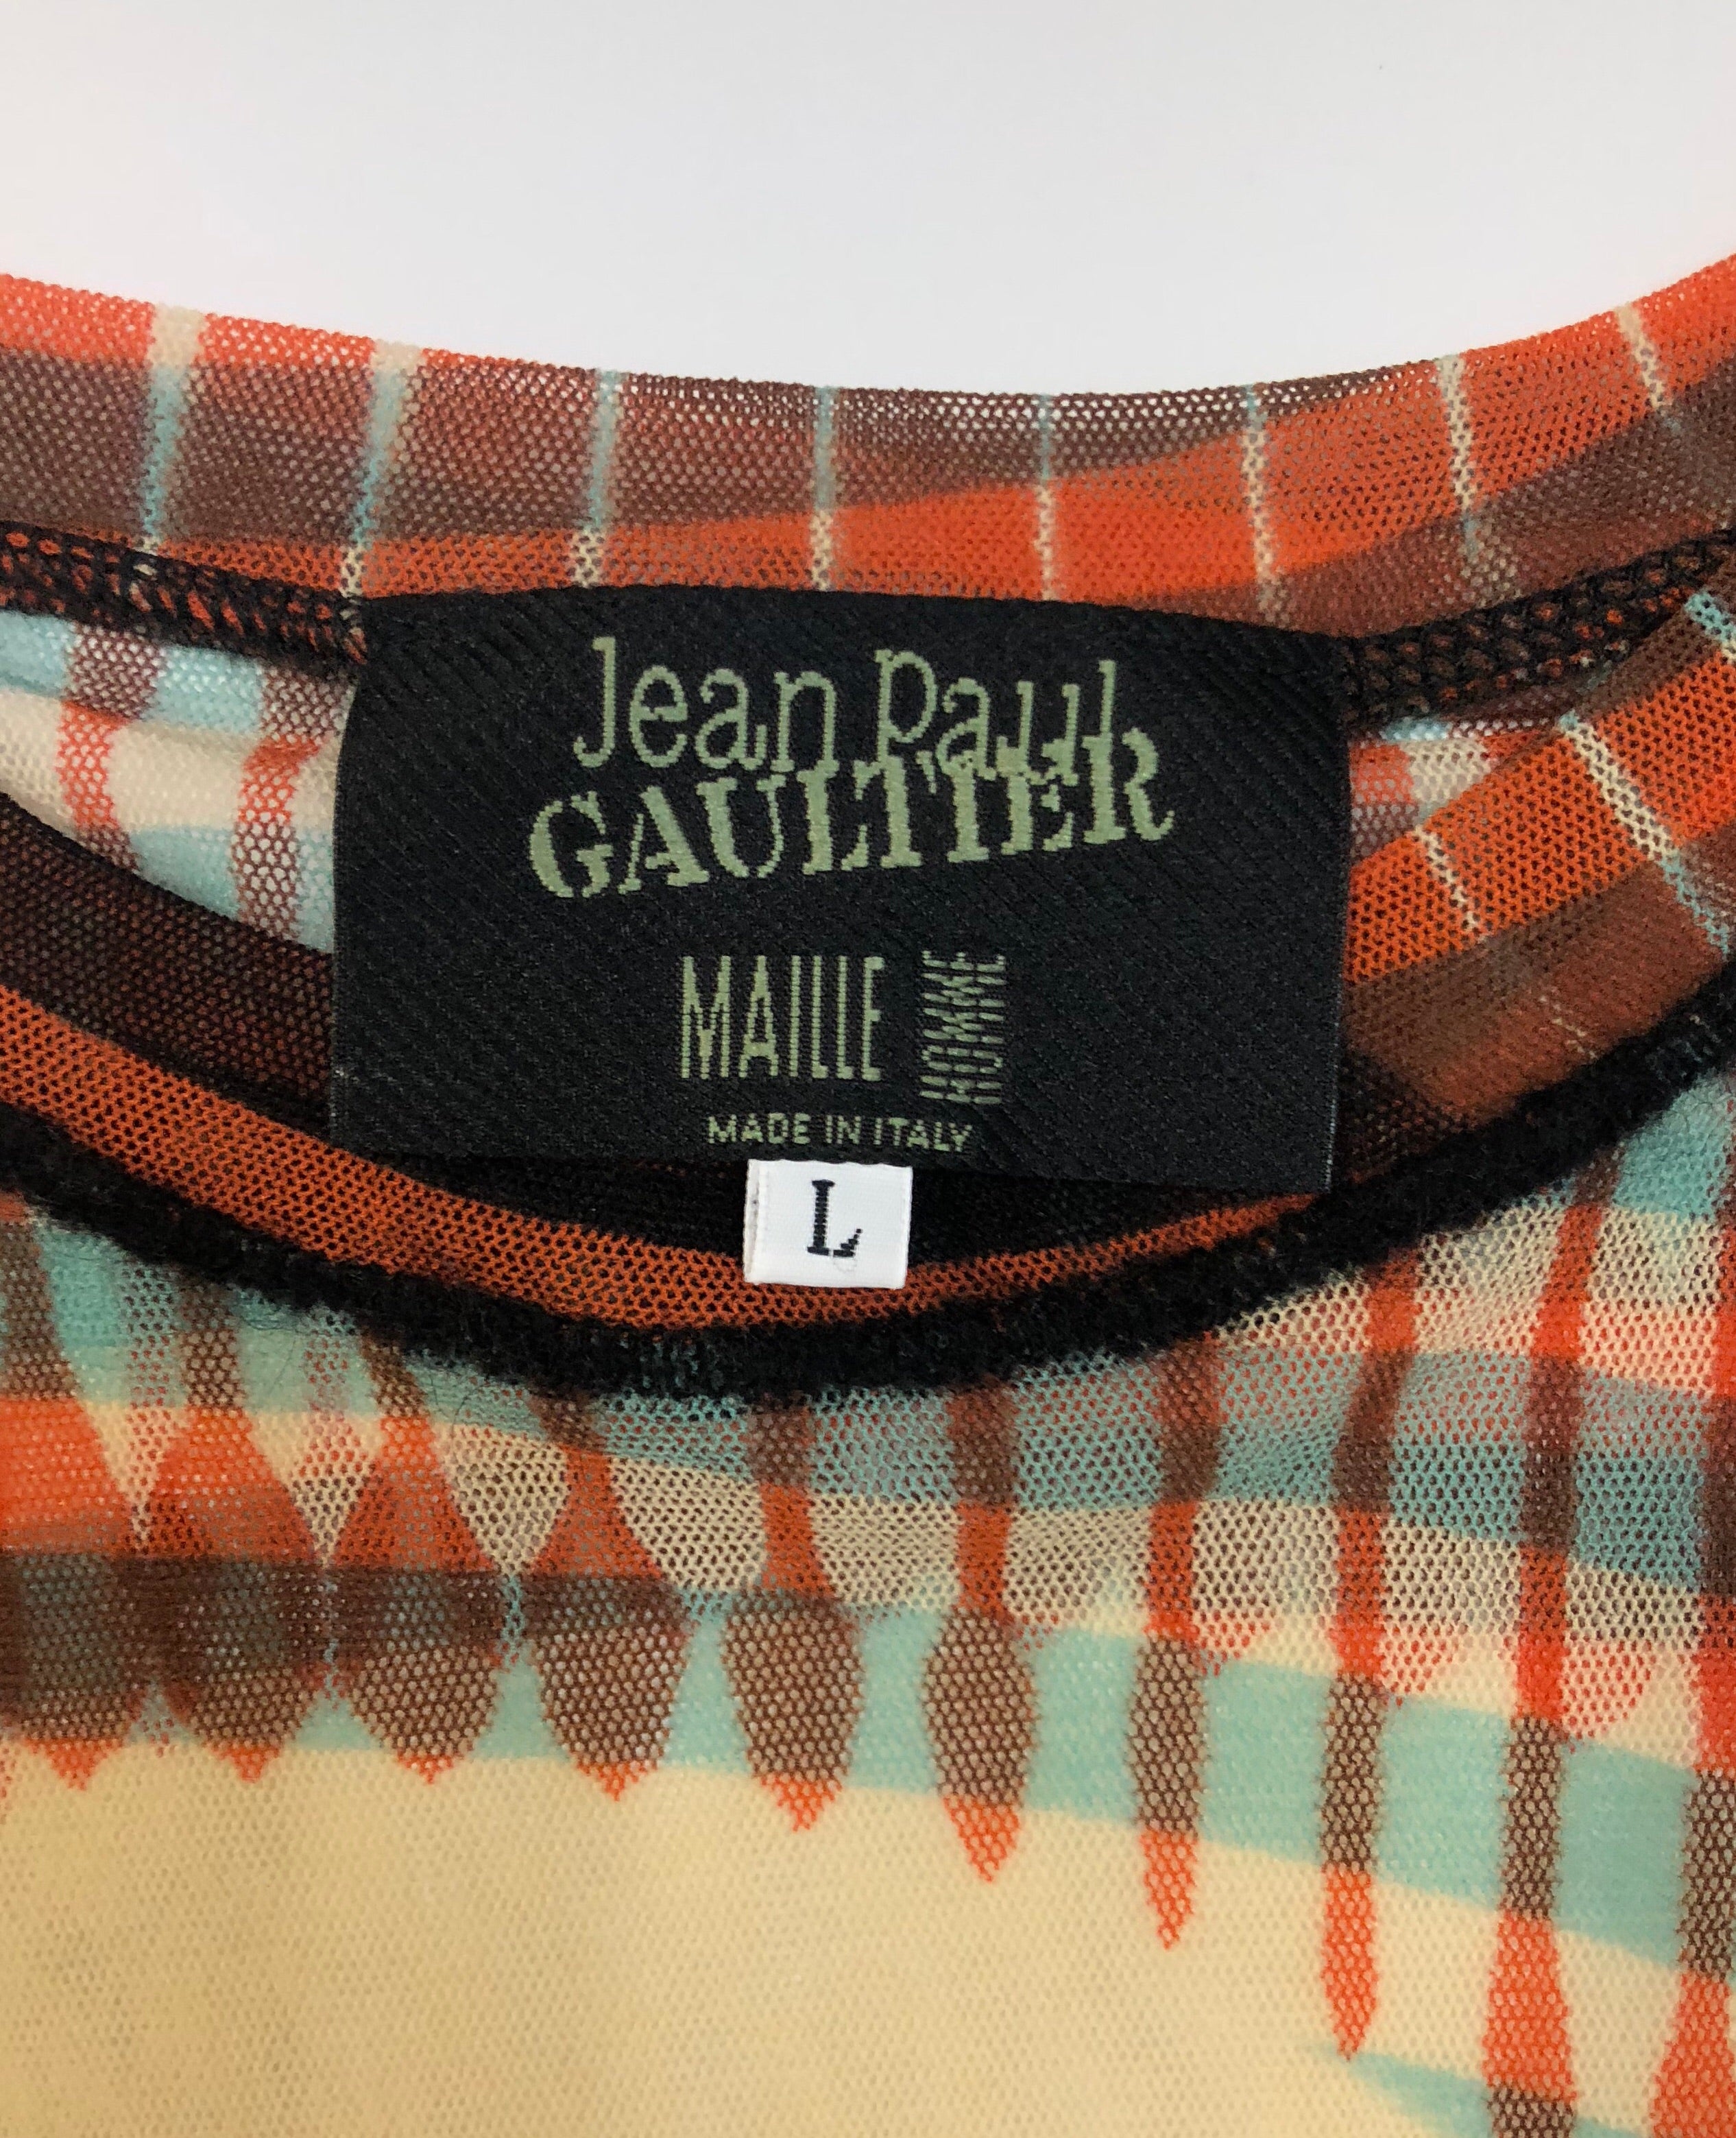 Jean Paul Gaultier Print Top